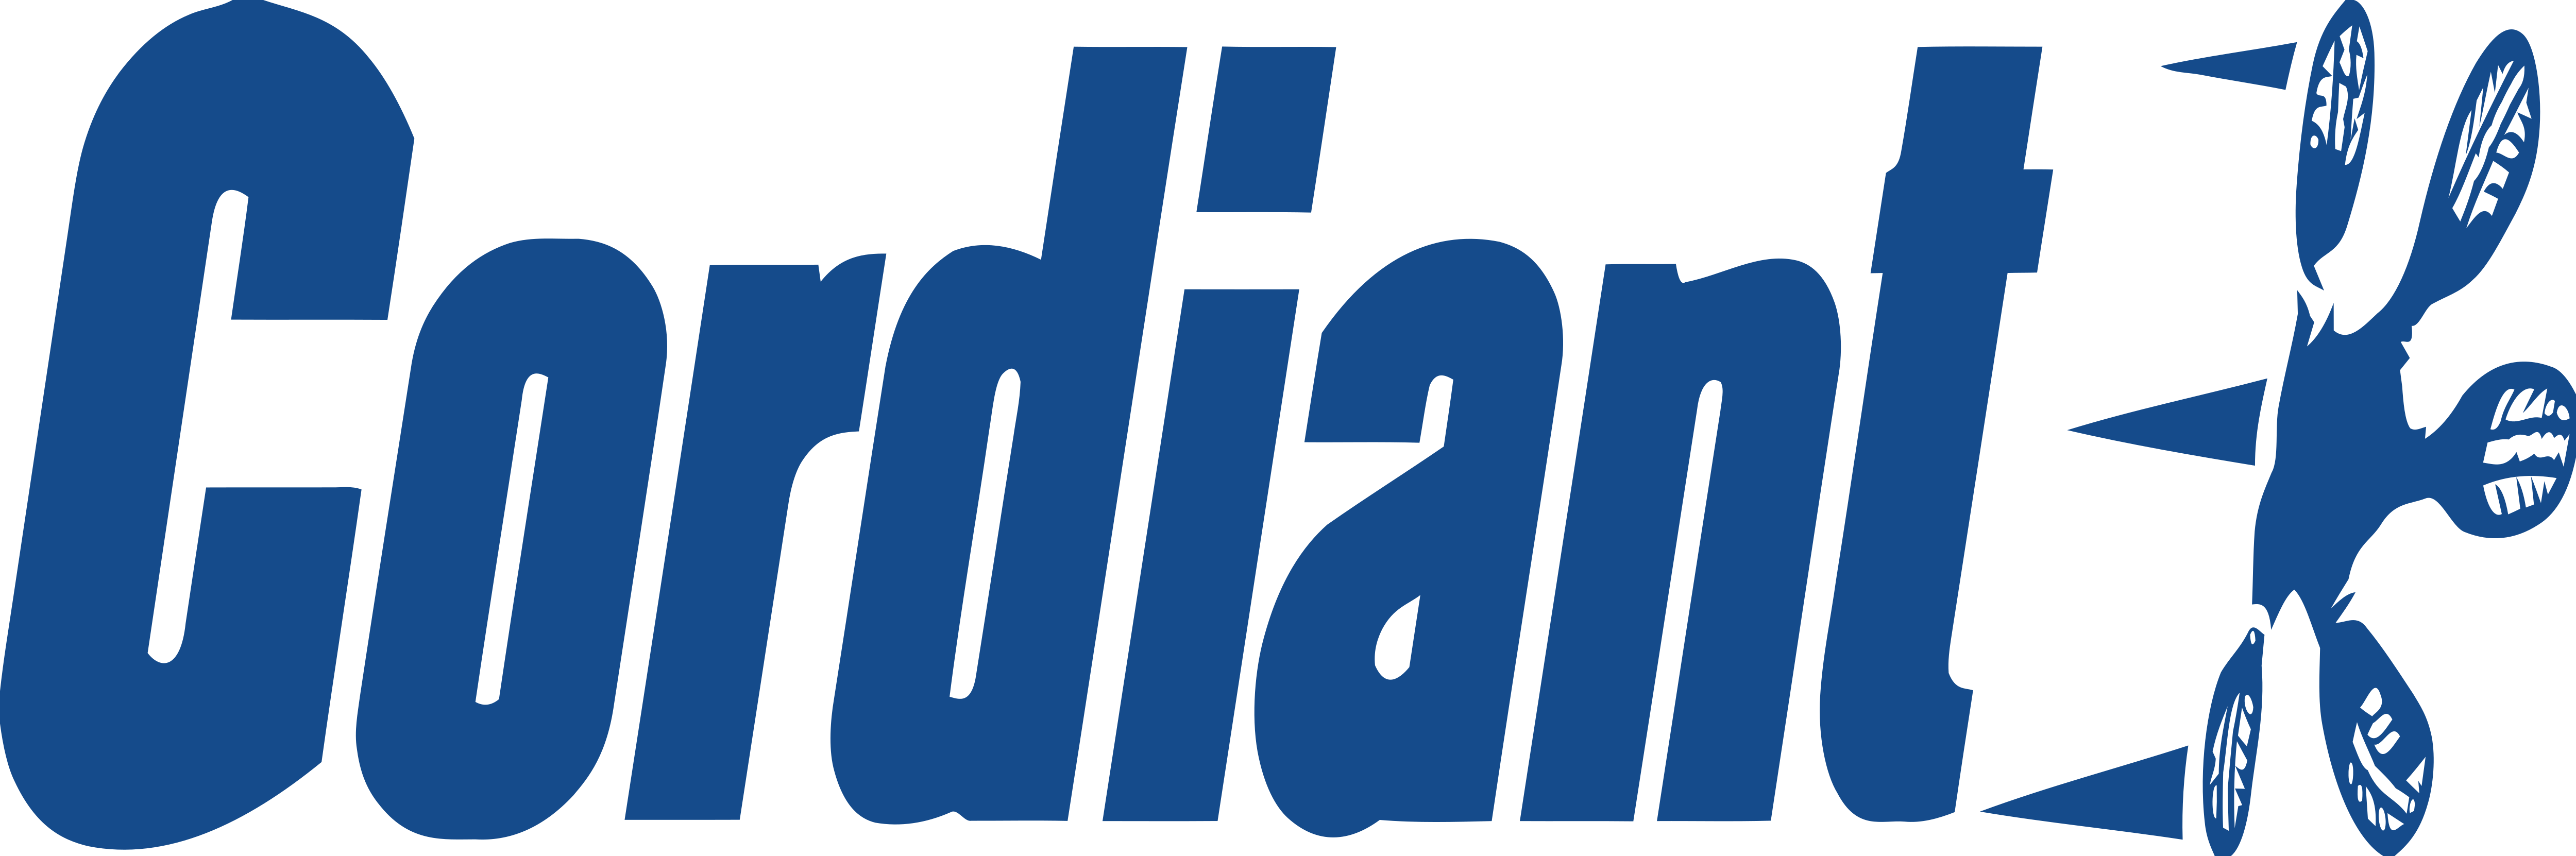 Cordiant-logo